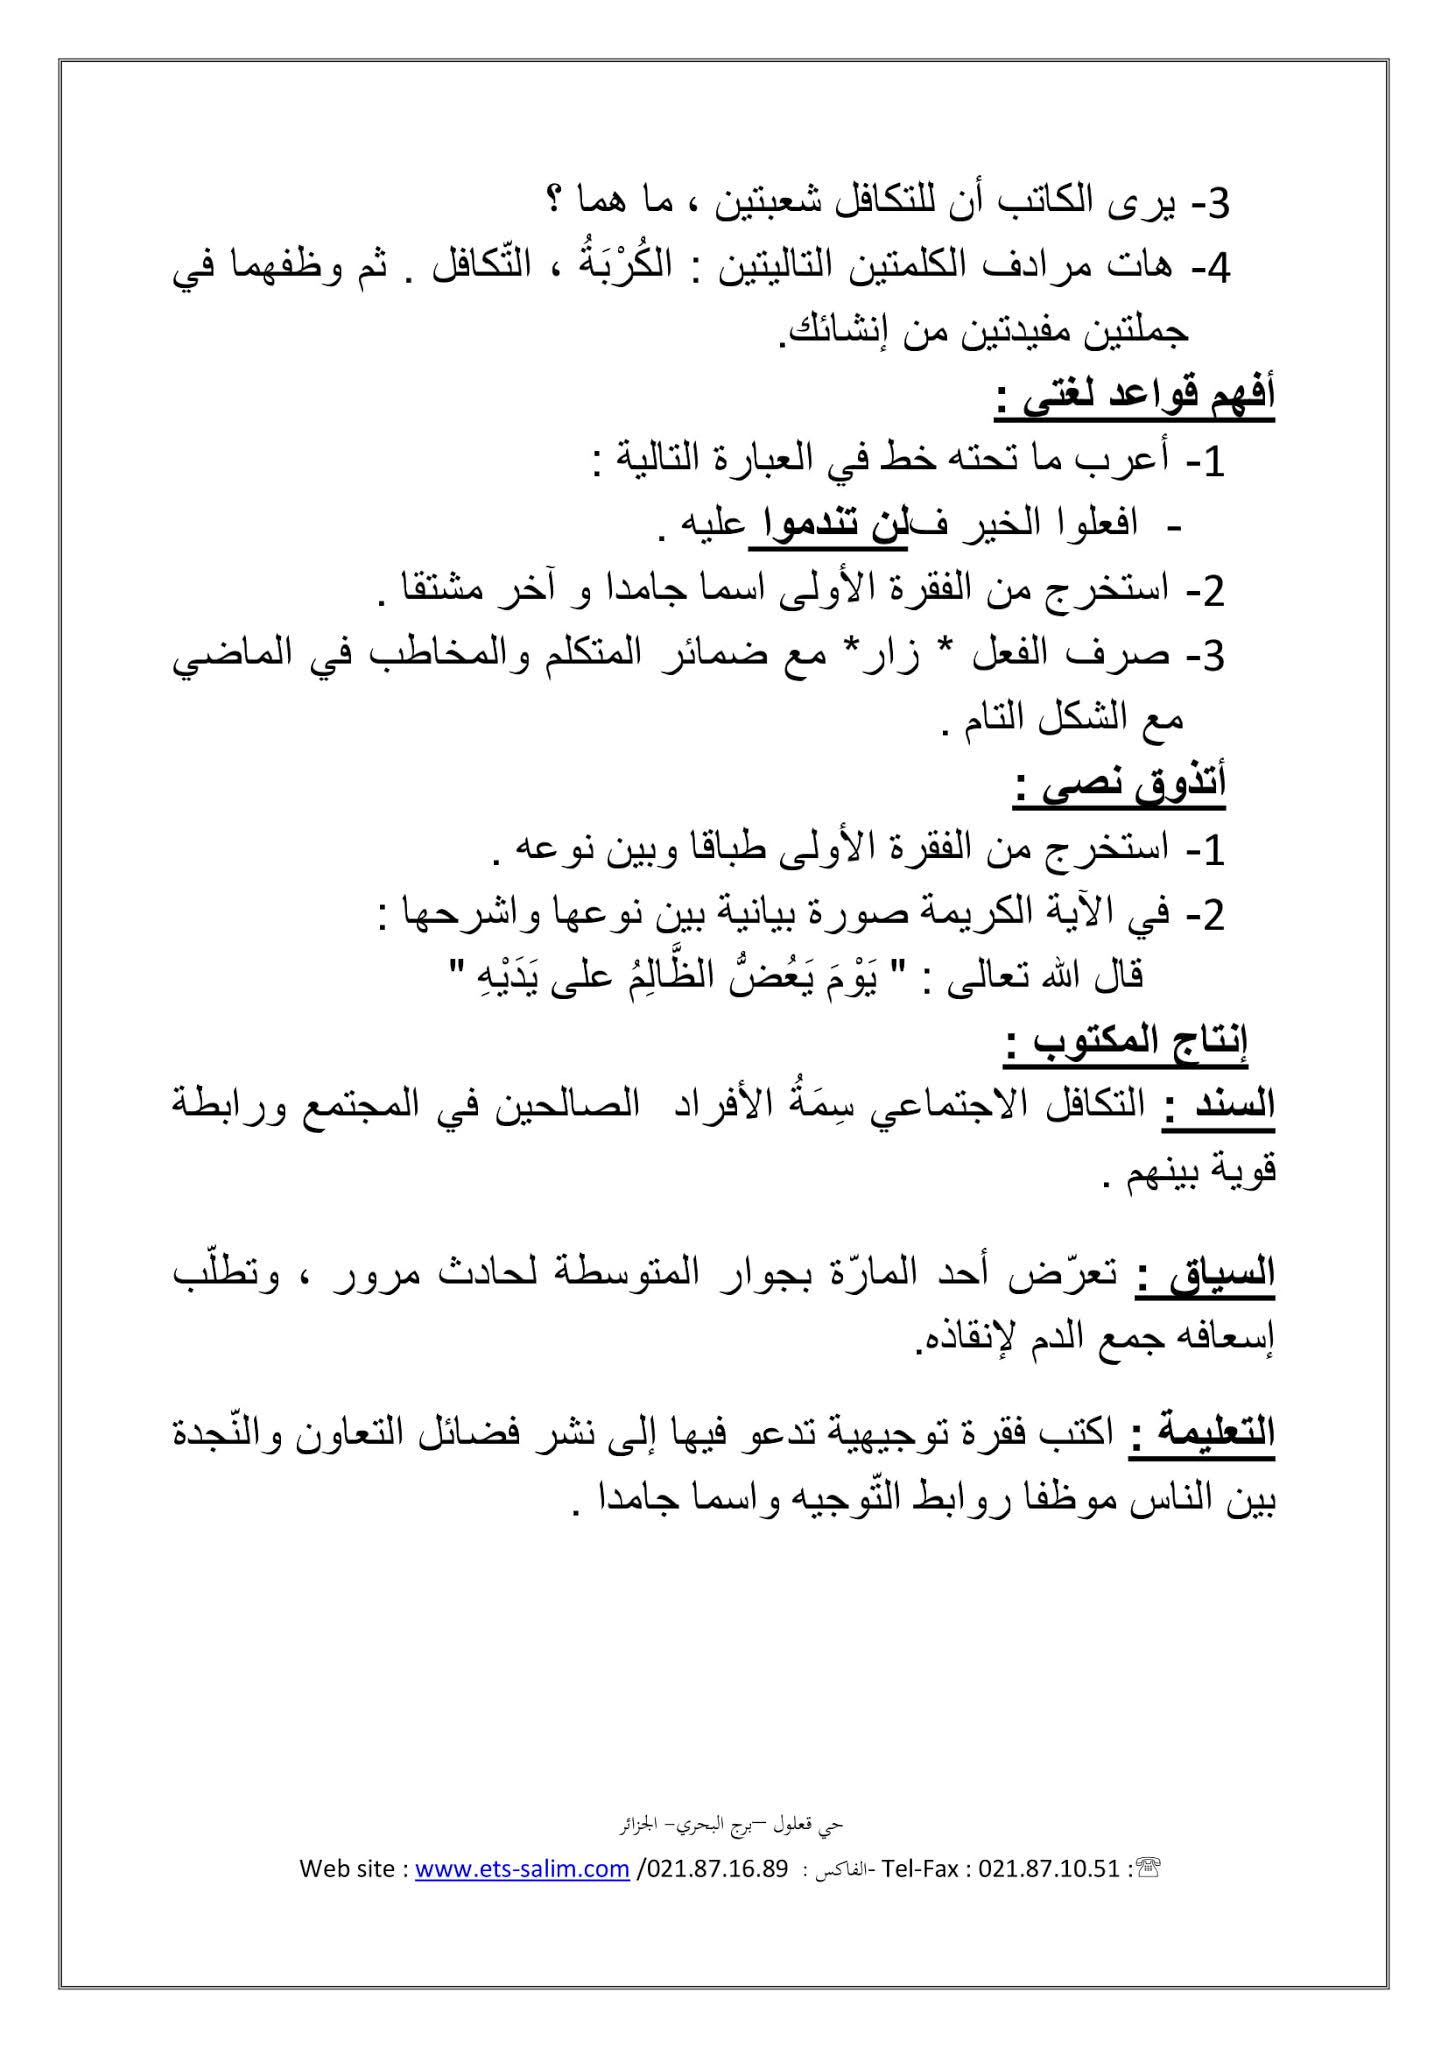 فرض اللغة العربية الفصل الثاني للسنة الثانية متوسط - الجيل الثاني نموذج 1